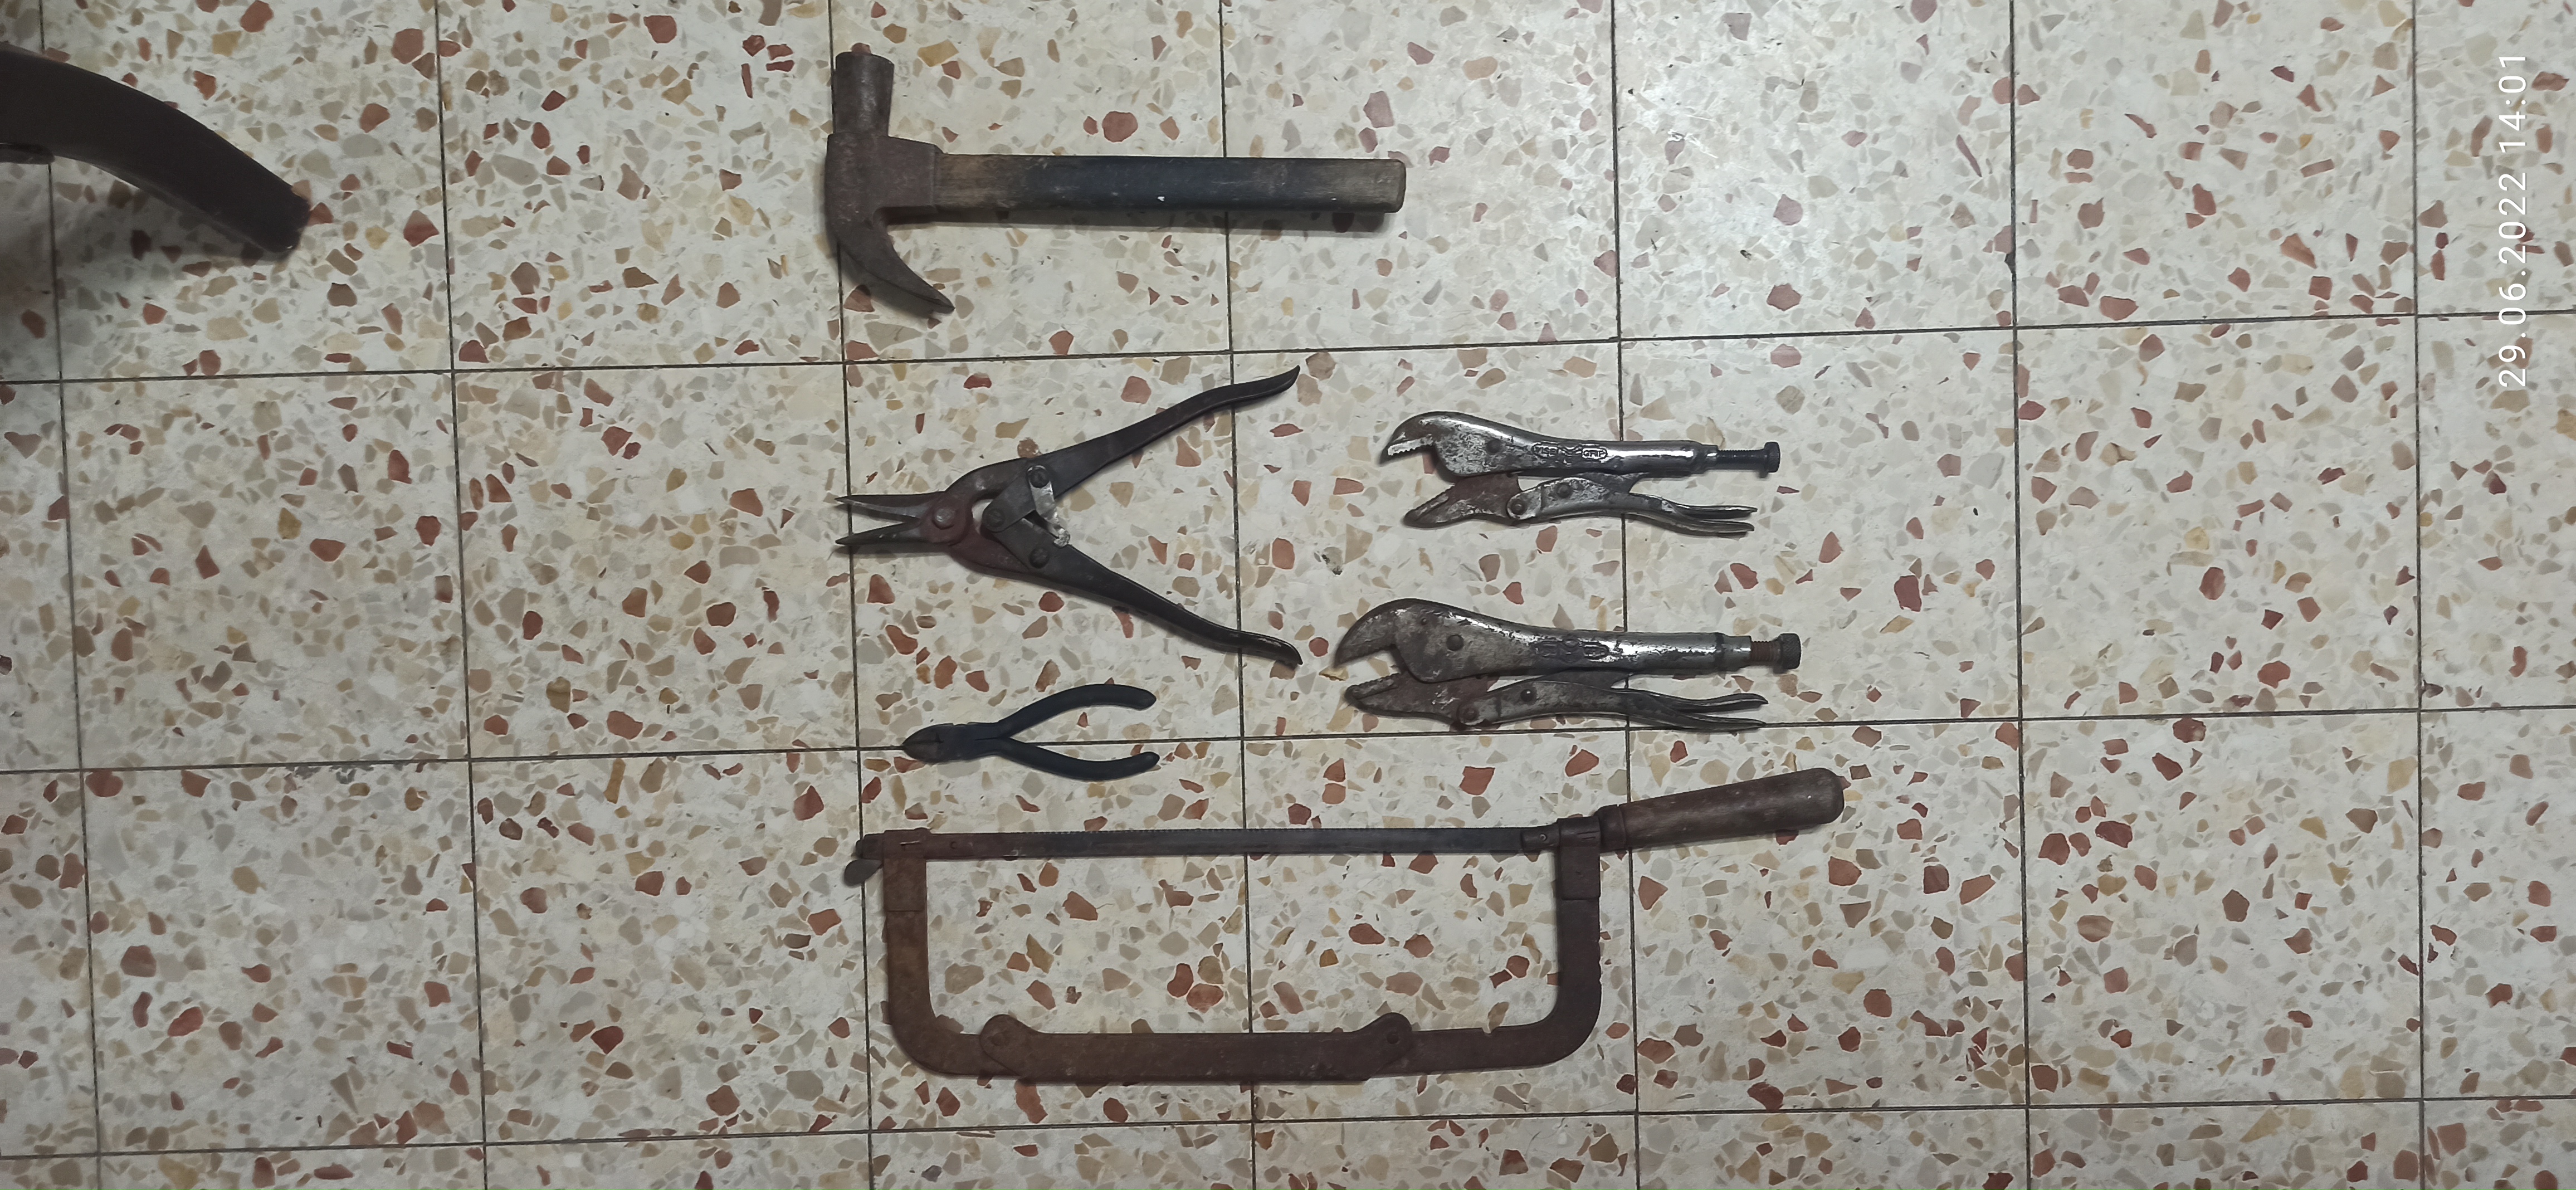 תמונה 1 ,מספר כלים שונים למכירה ביבנה כלי עבודה  כלים לעבודת מכונאות